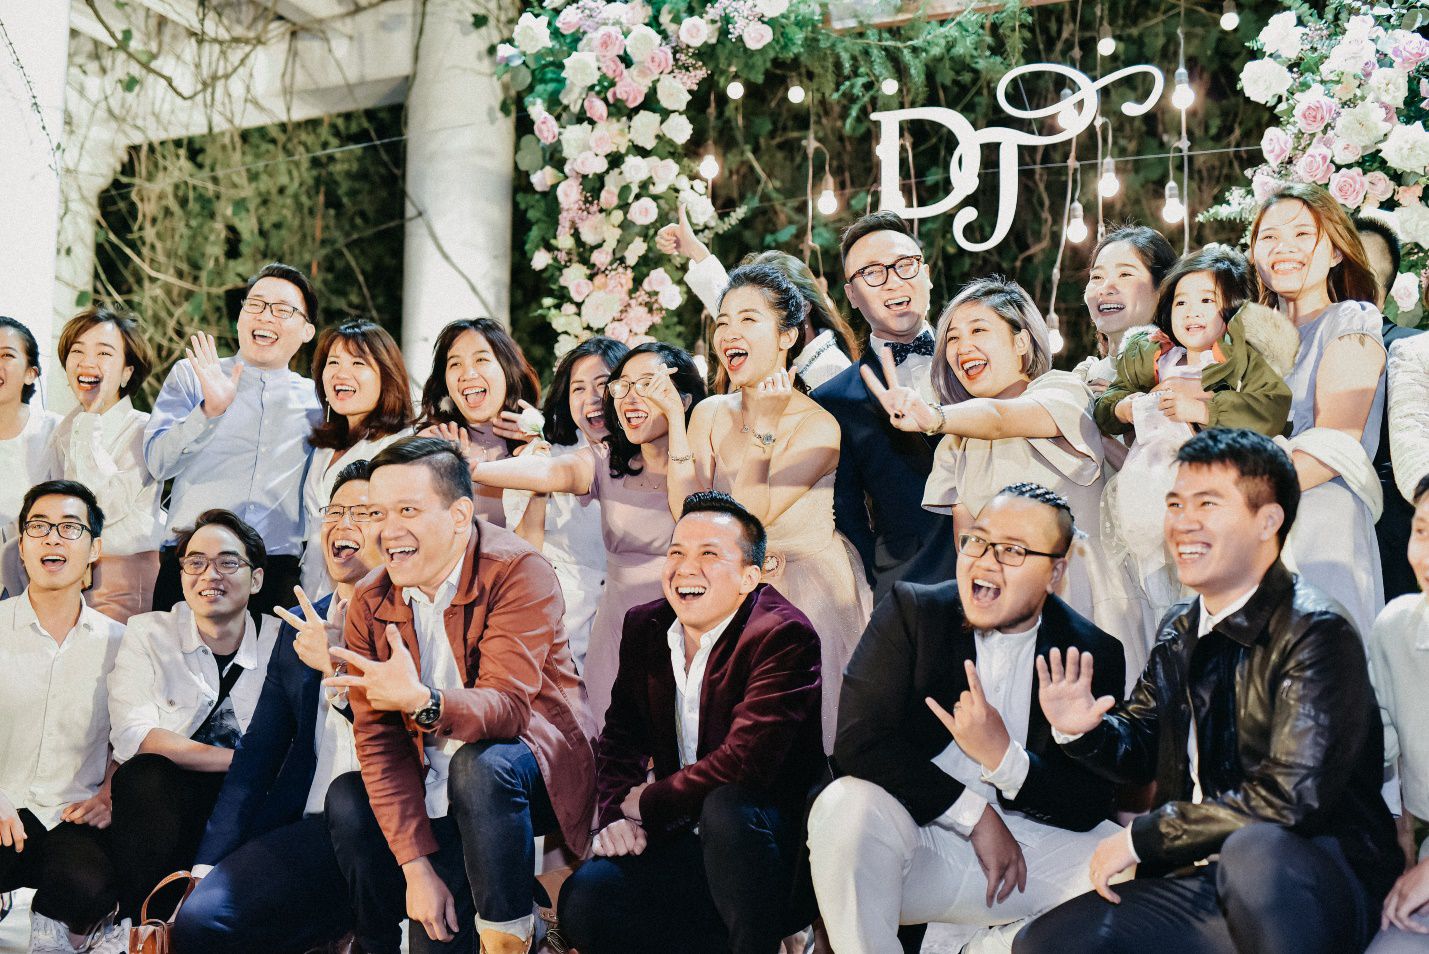 MC VTV lấy được vợ “nhờ bát cháo sườn” và đám cưới 100 khách mời - 13